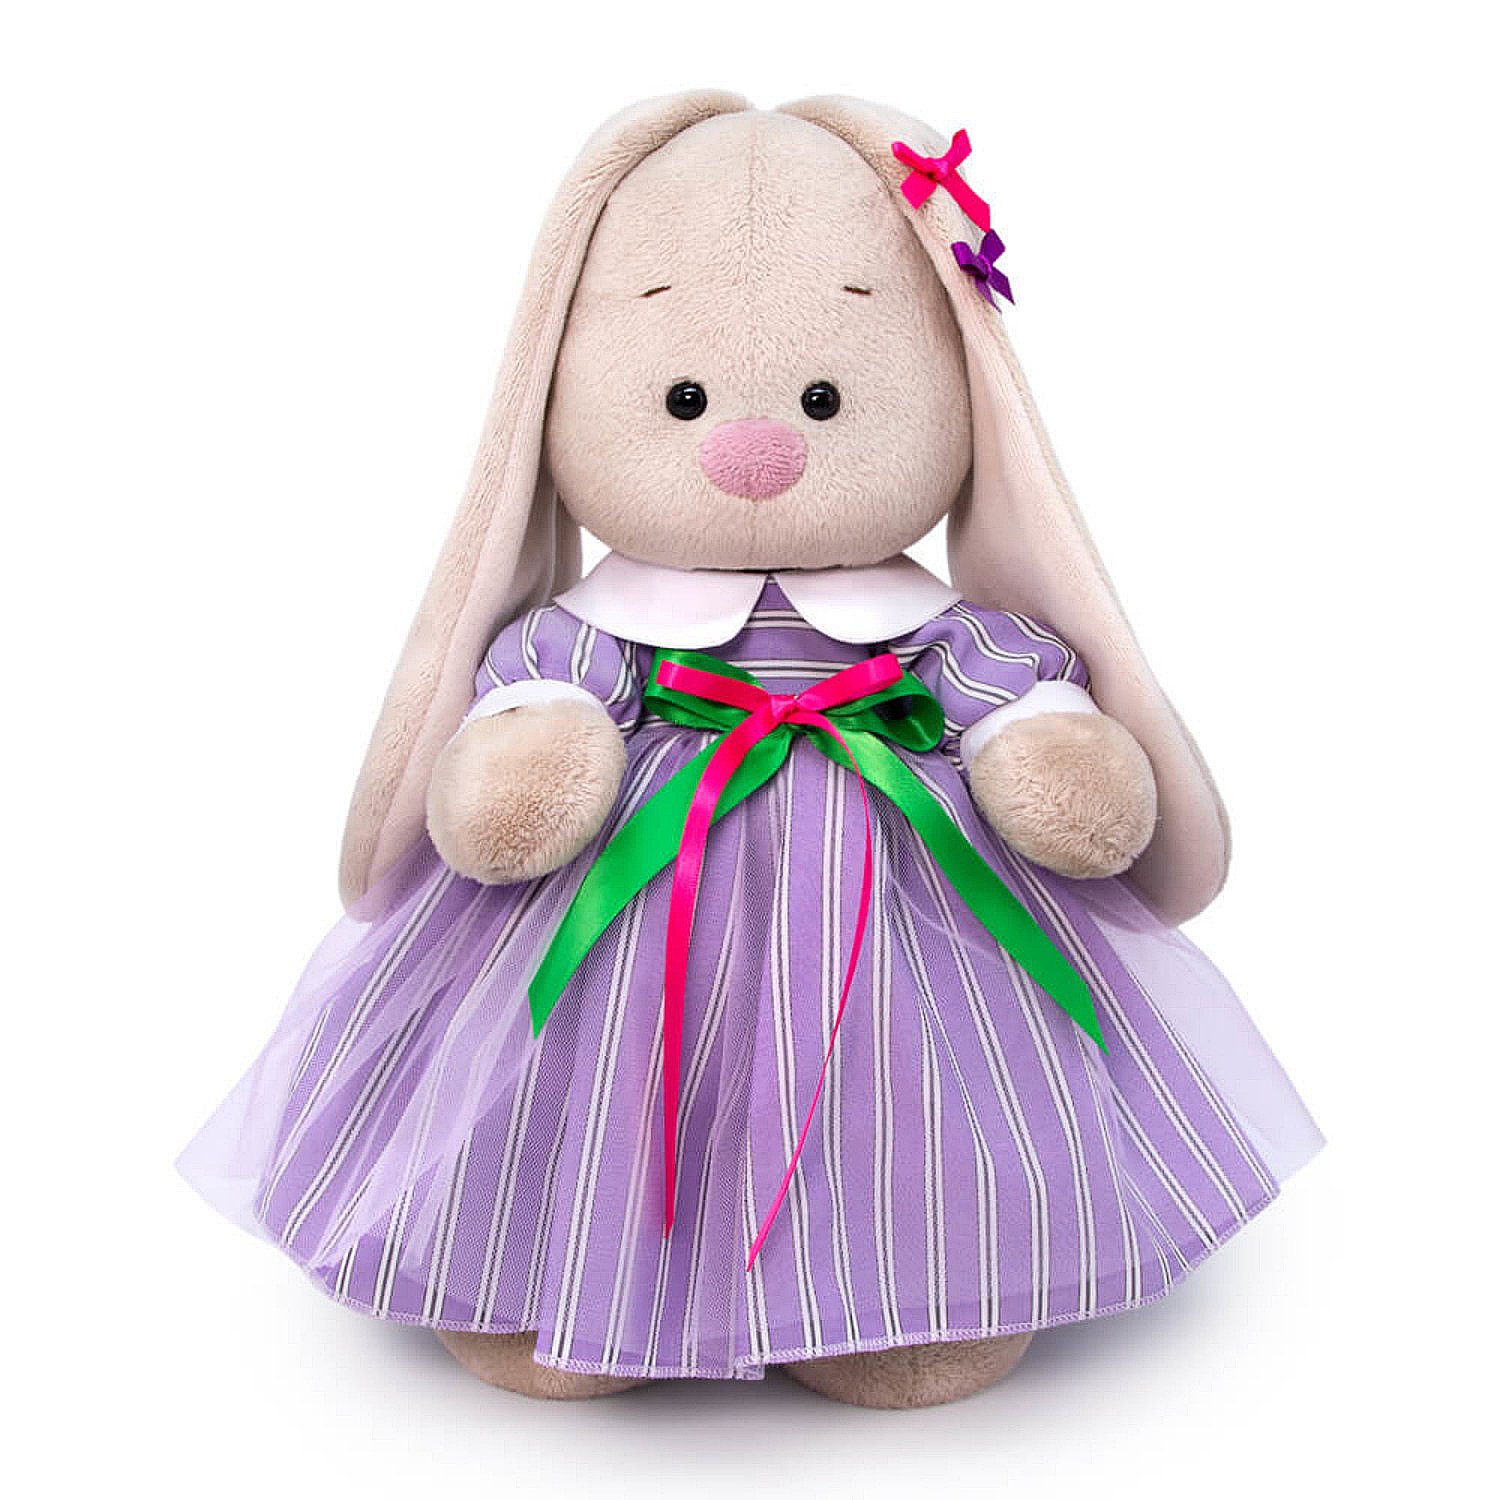 Мягкая игрушка "Зайка Ми в полосатом платье", 25 см., BUDI BASA StS-406